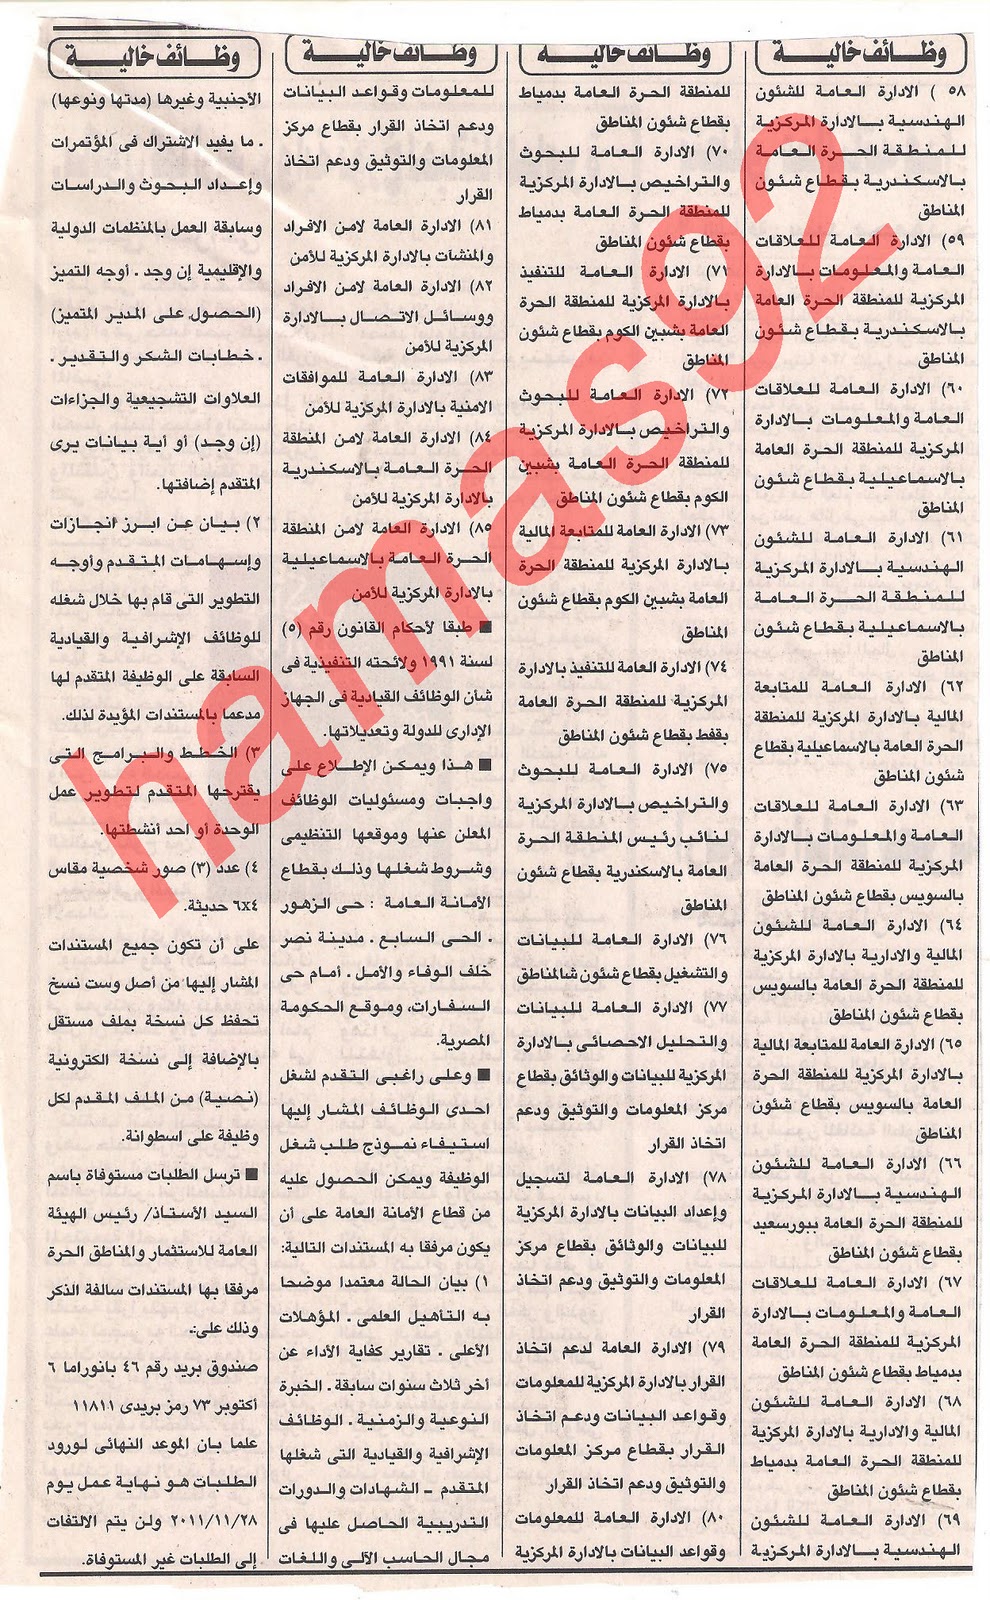 وظائف جريدة الاهرام الثلاثاء 15\11\2011  Picture+001